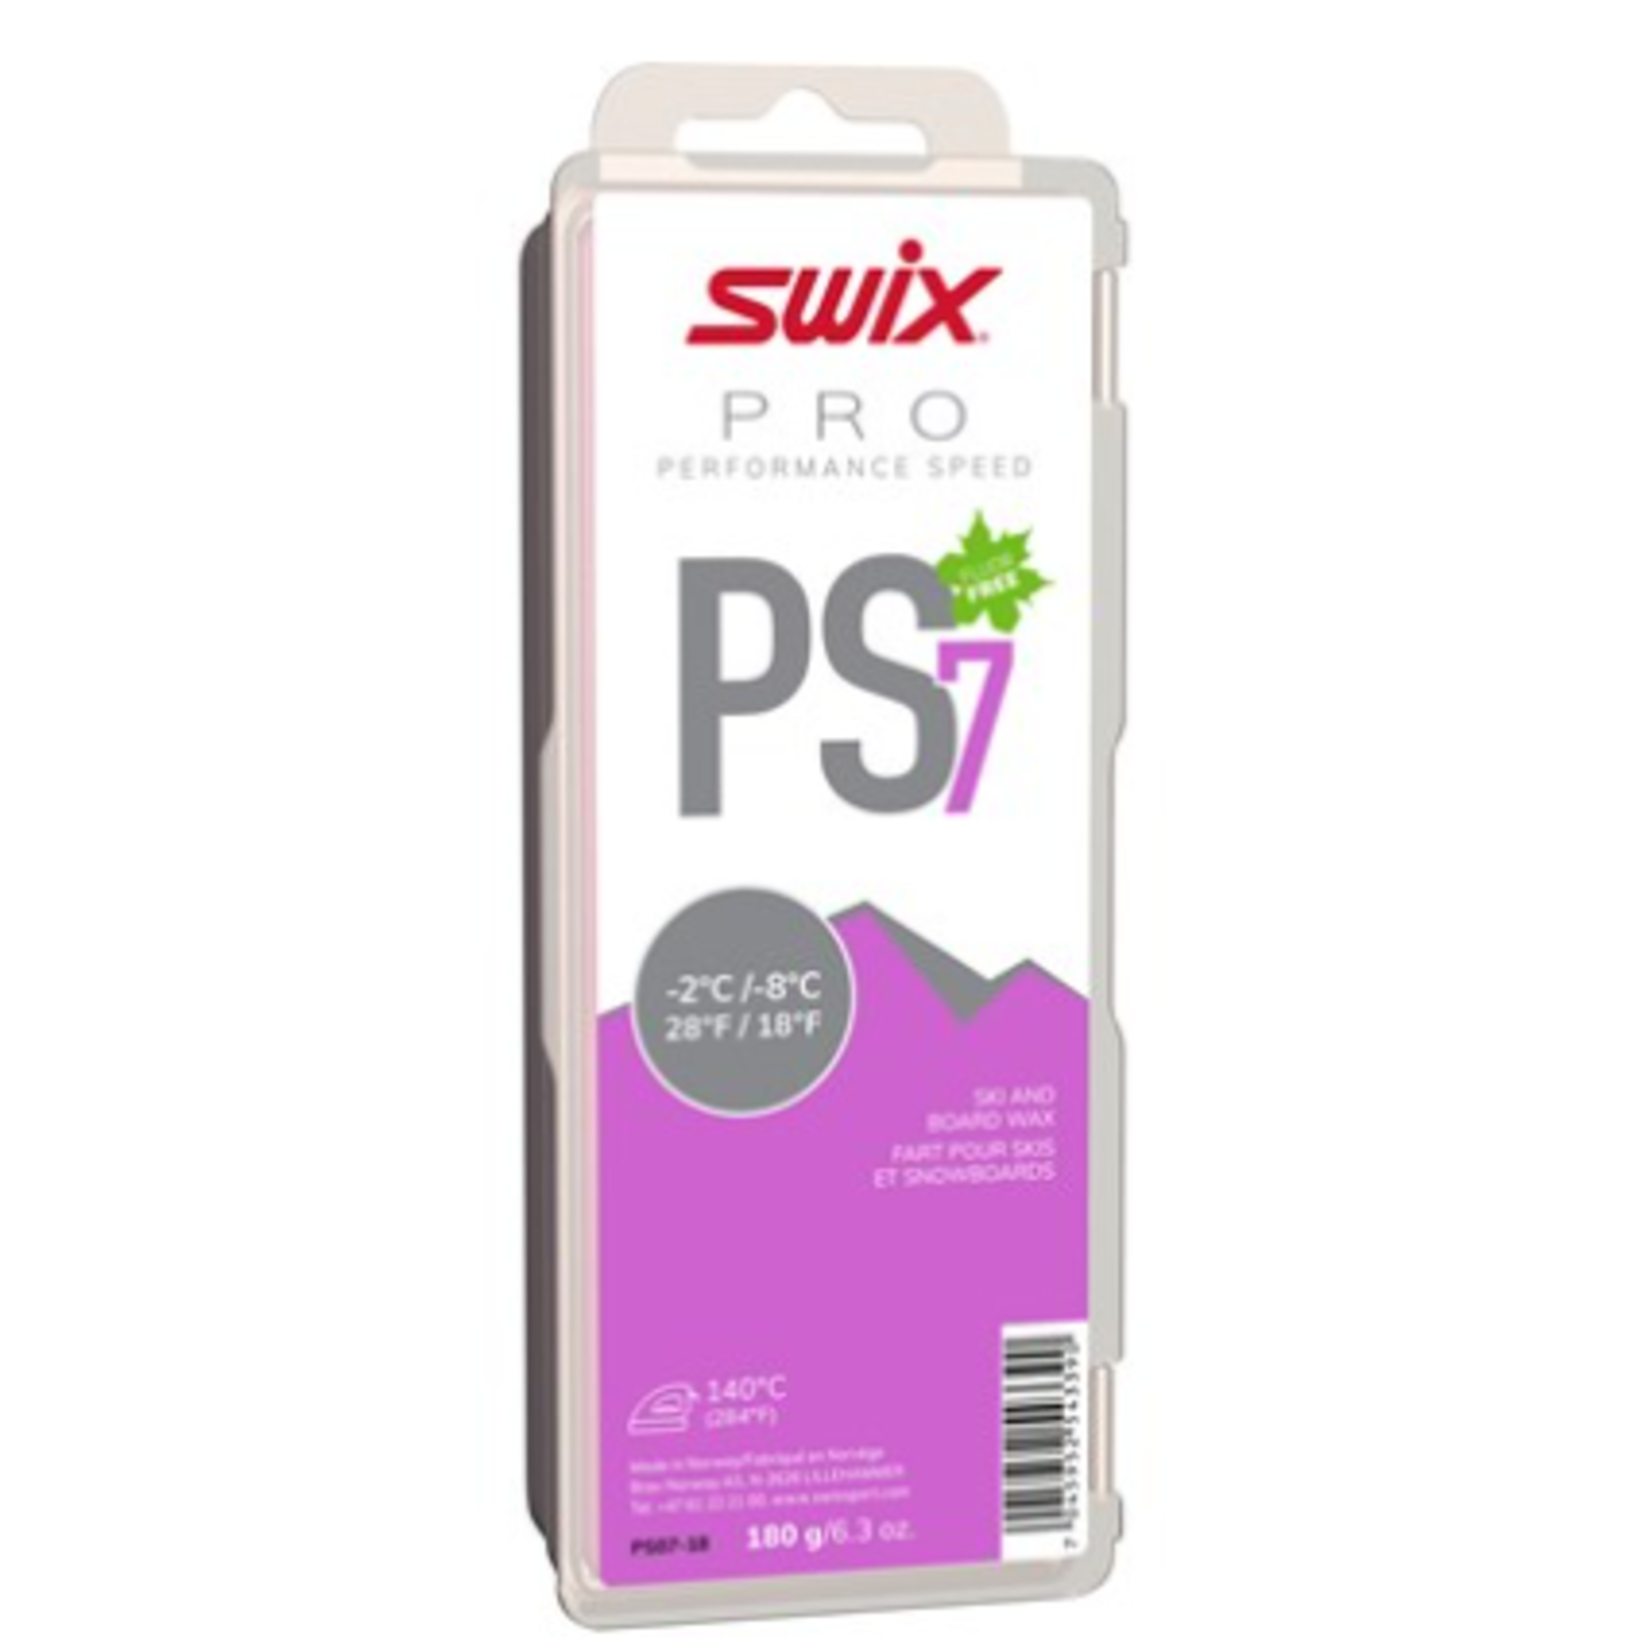 Swix PS7 Violet, -2°C/-8°C, 180g